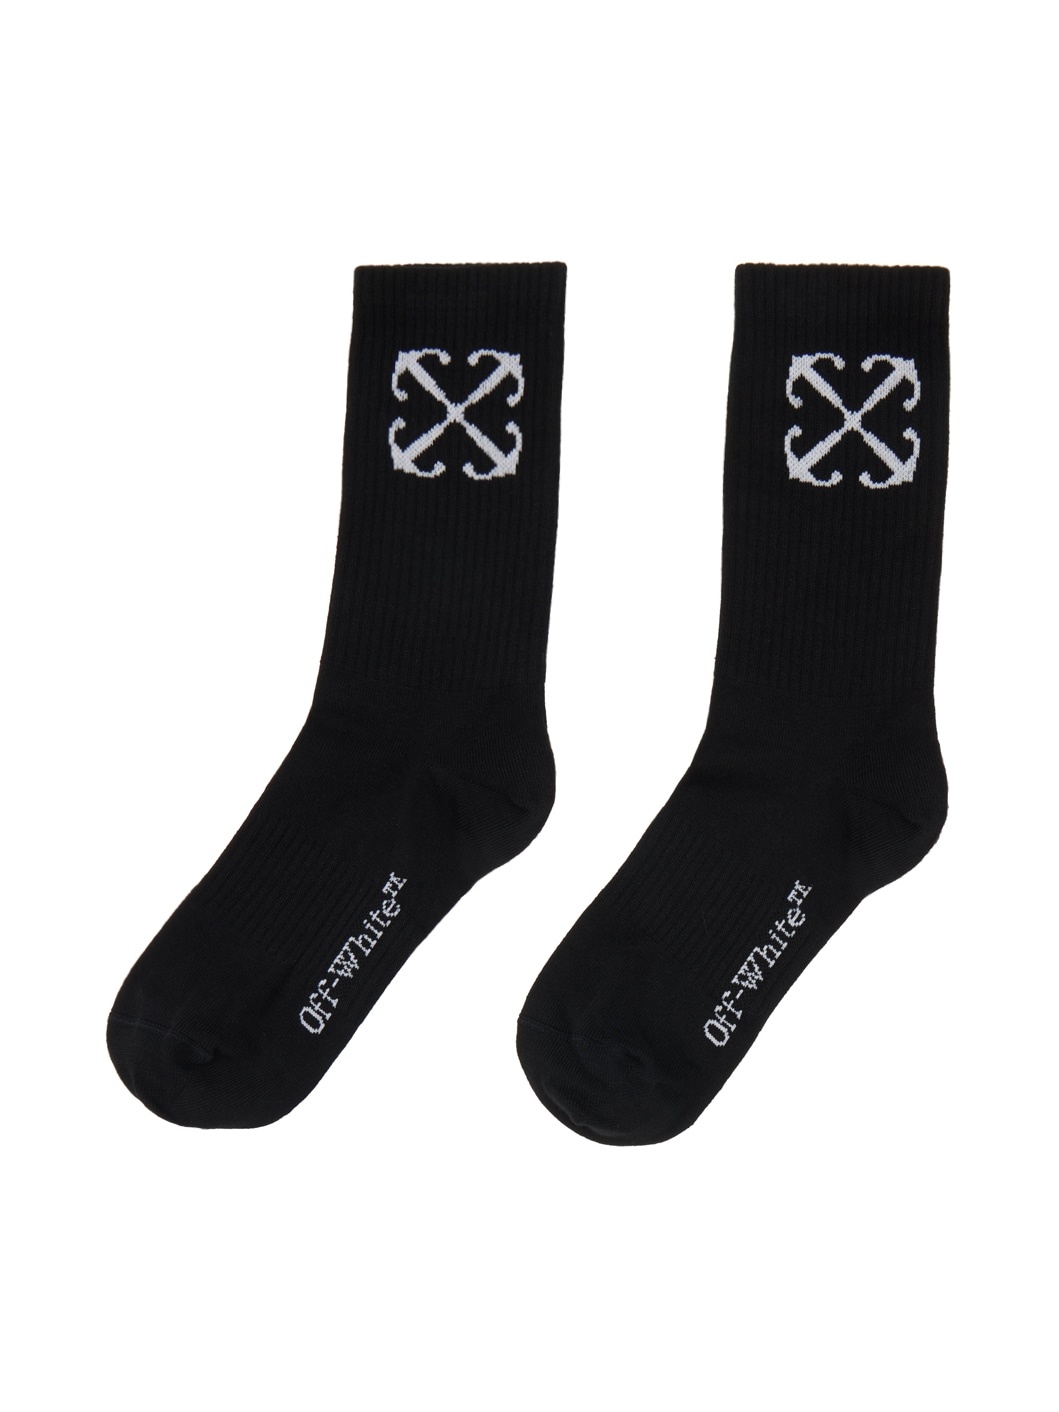 Black Arrow Socks - 2